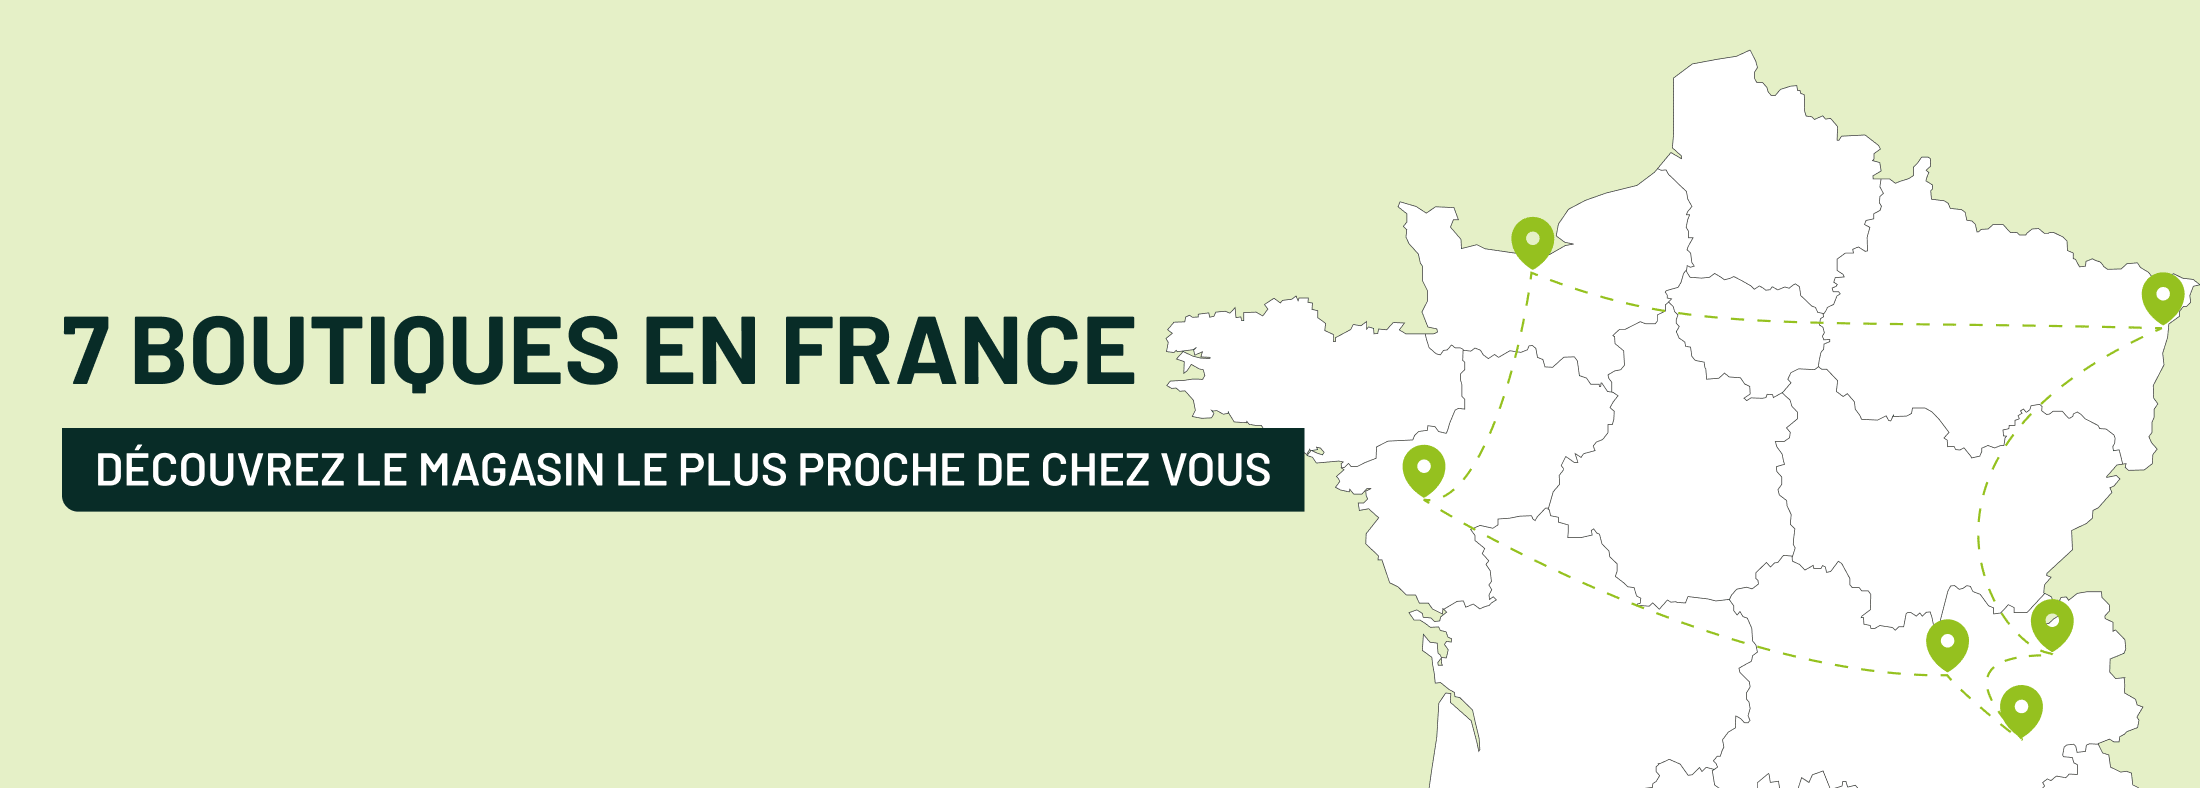 7 boutiques en France